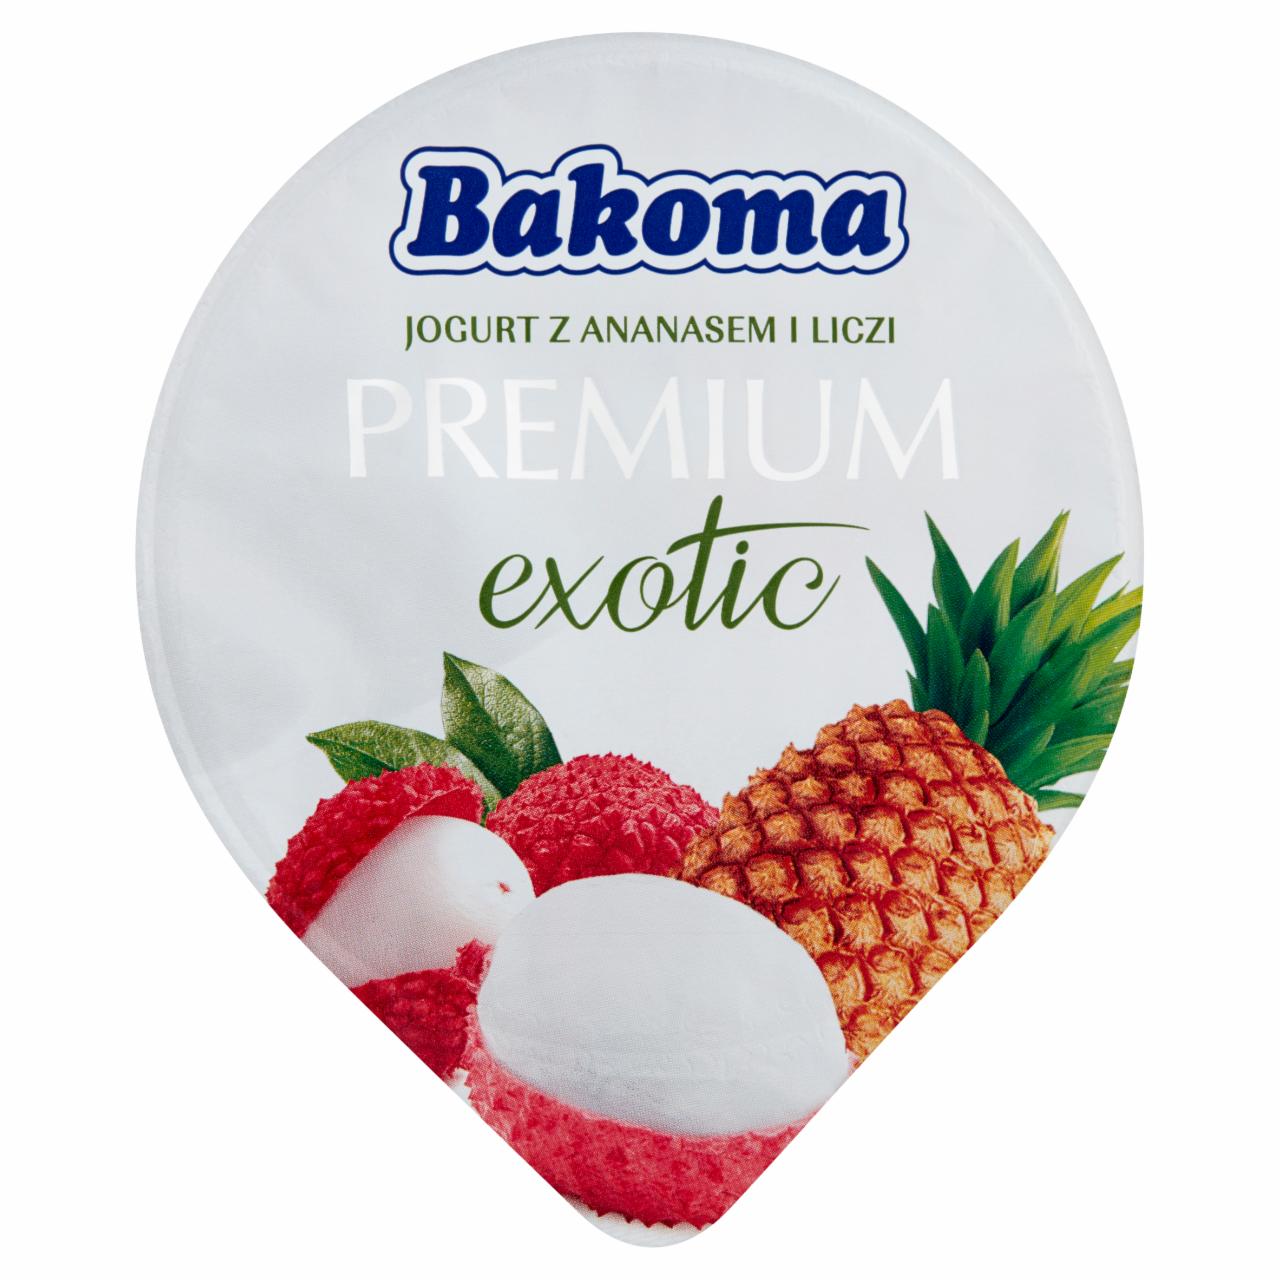 Zdjęcia - Bakoma Premium Exotic Jogurt z ananasem i liczi 140 g